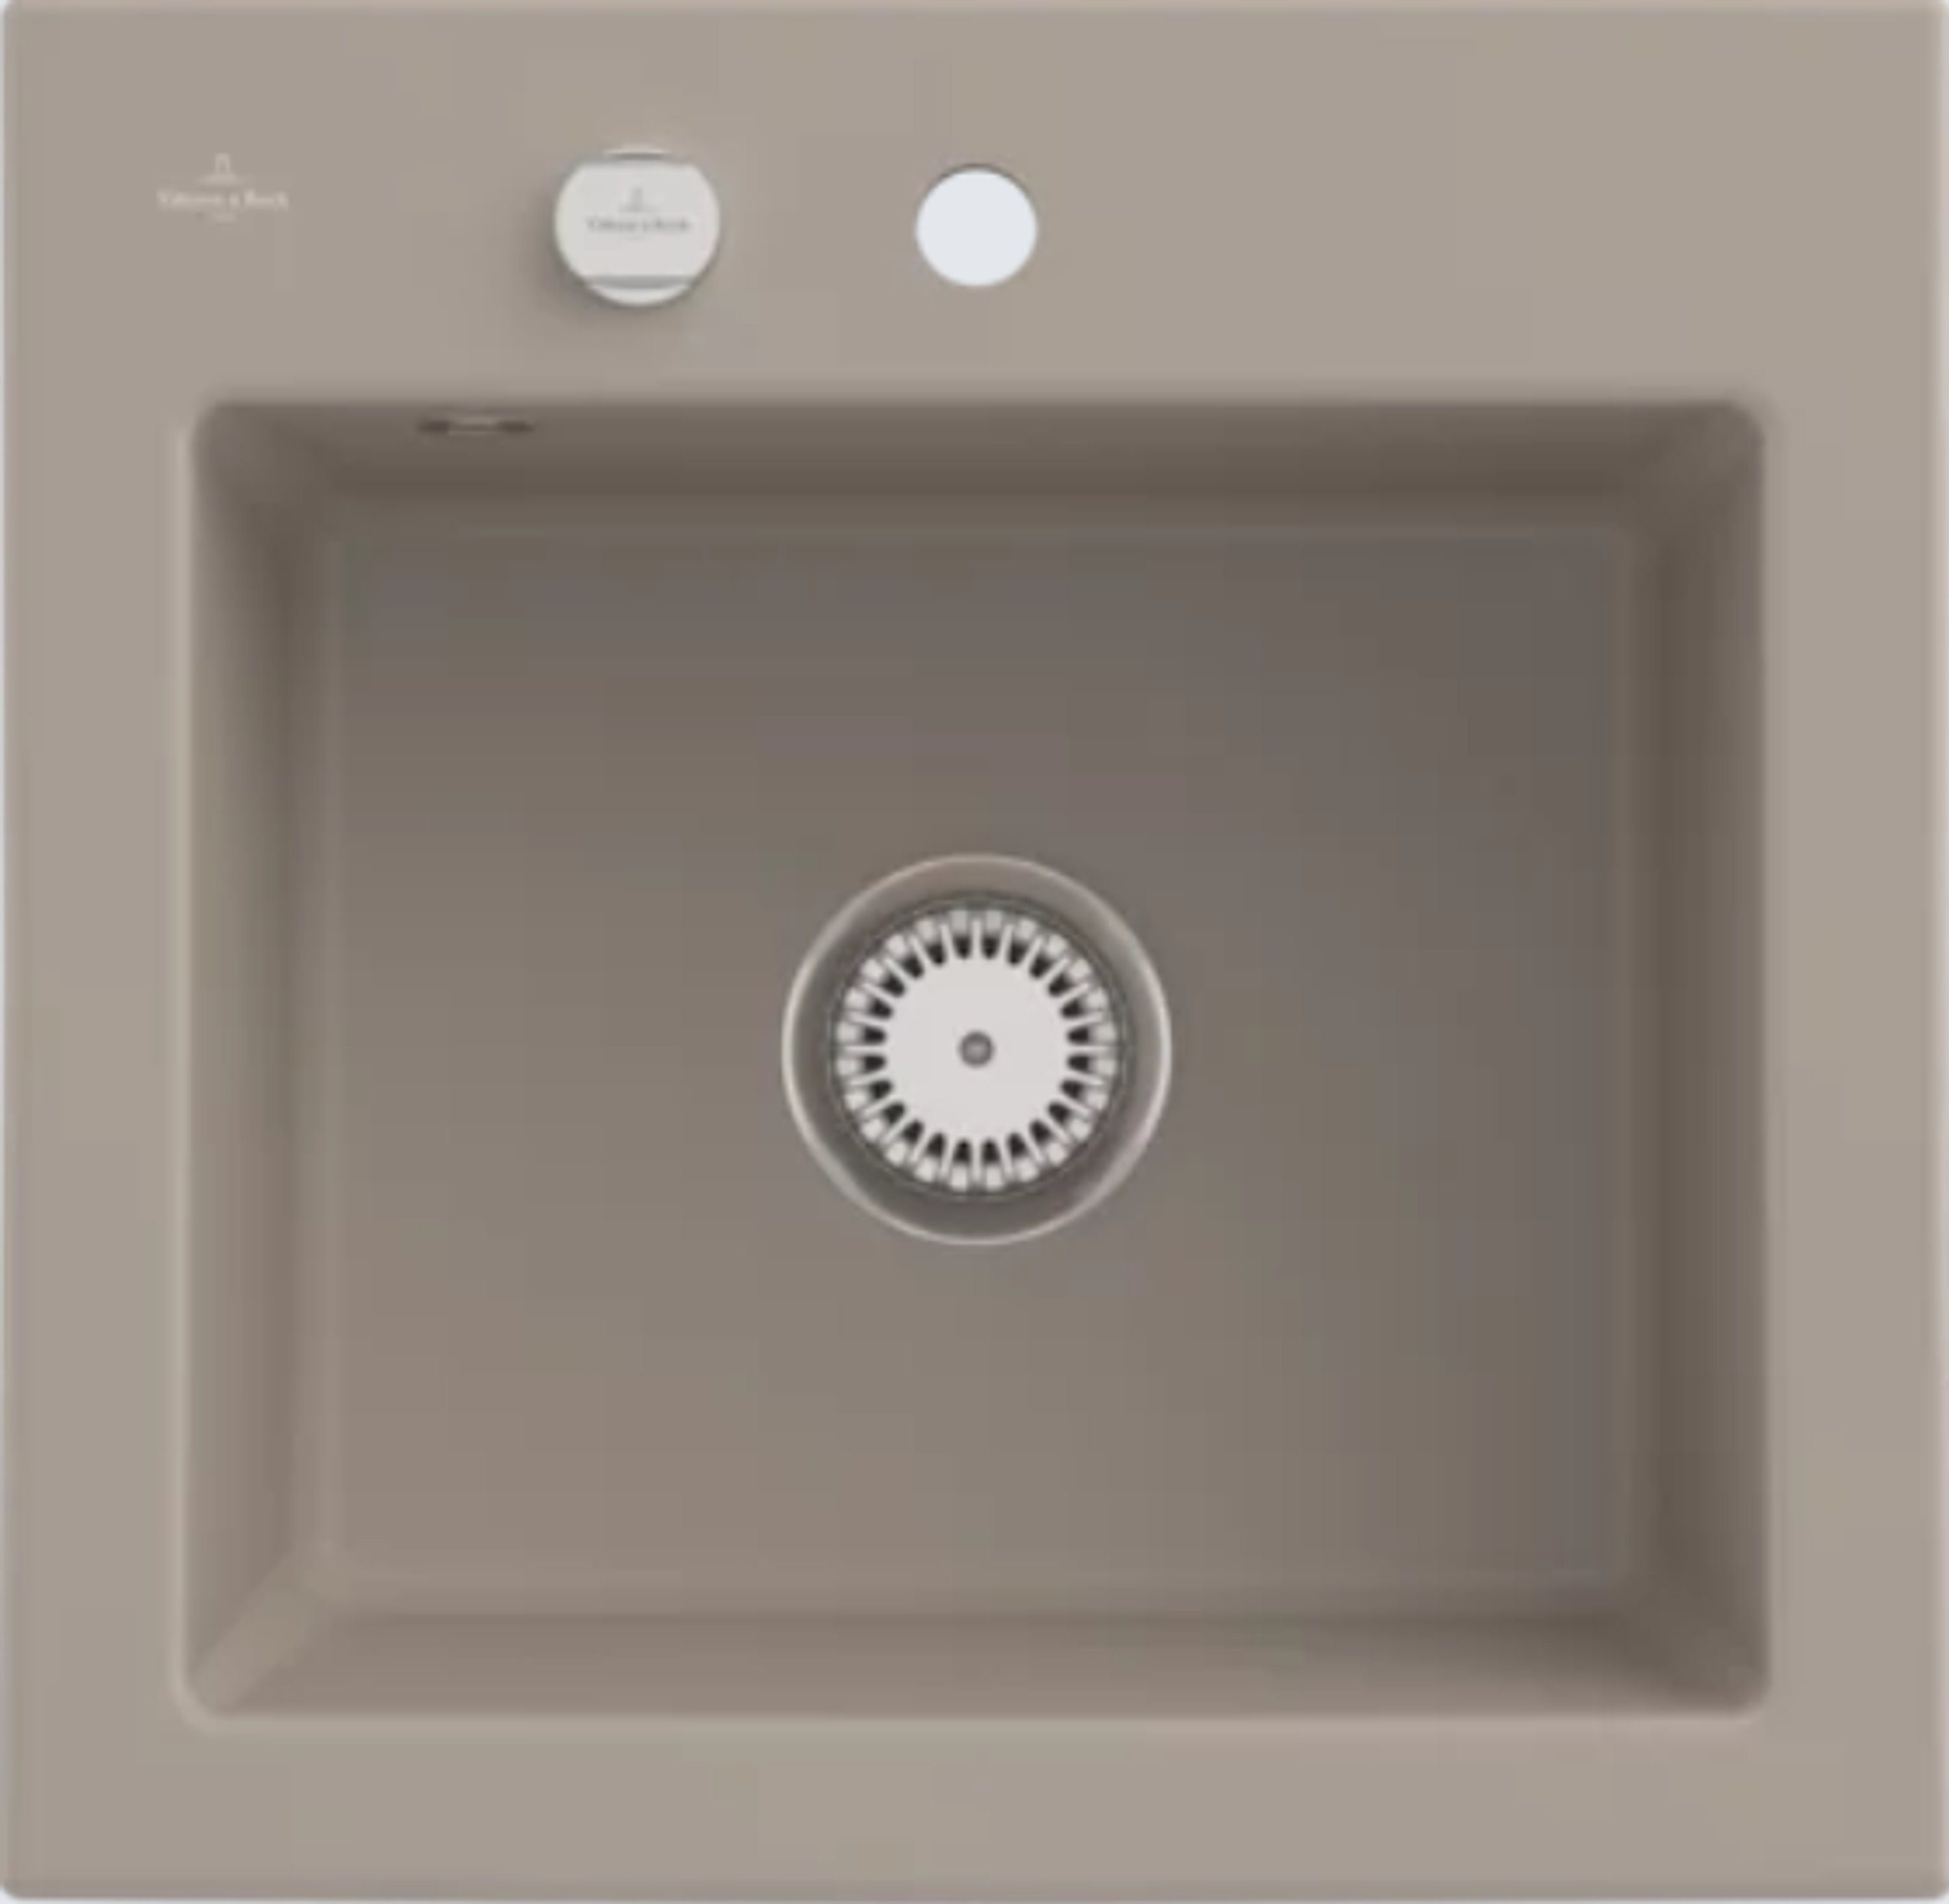 Villeroy & Boch Küchenspüle 3315 02 AM, Rechteckig, 52.5/22 cm, Subway Serie, Dampfgarschalen einsetzbar, Geschmacksmuster geschützt